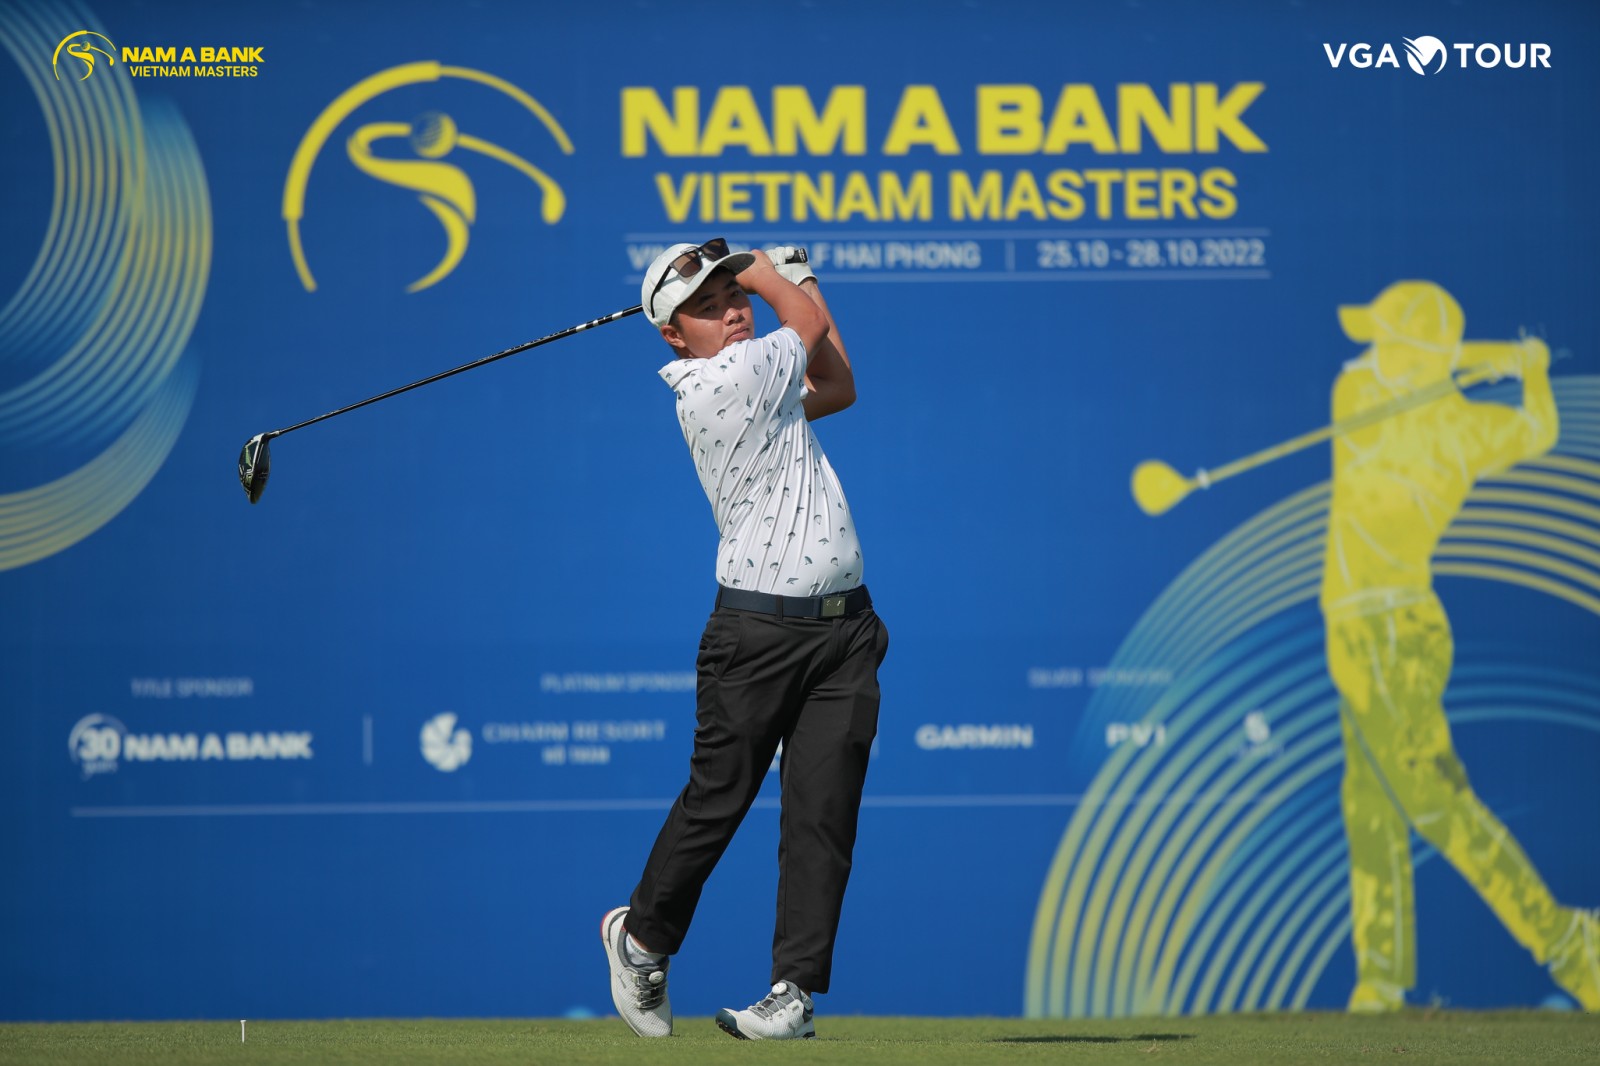 Vòng 3 giải đấu Nam Á Bank Vietnam Master 2022: Bảng xếp hạng đã có sự thay đổi